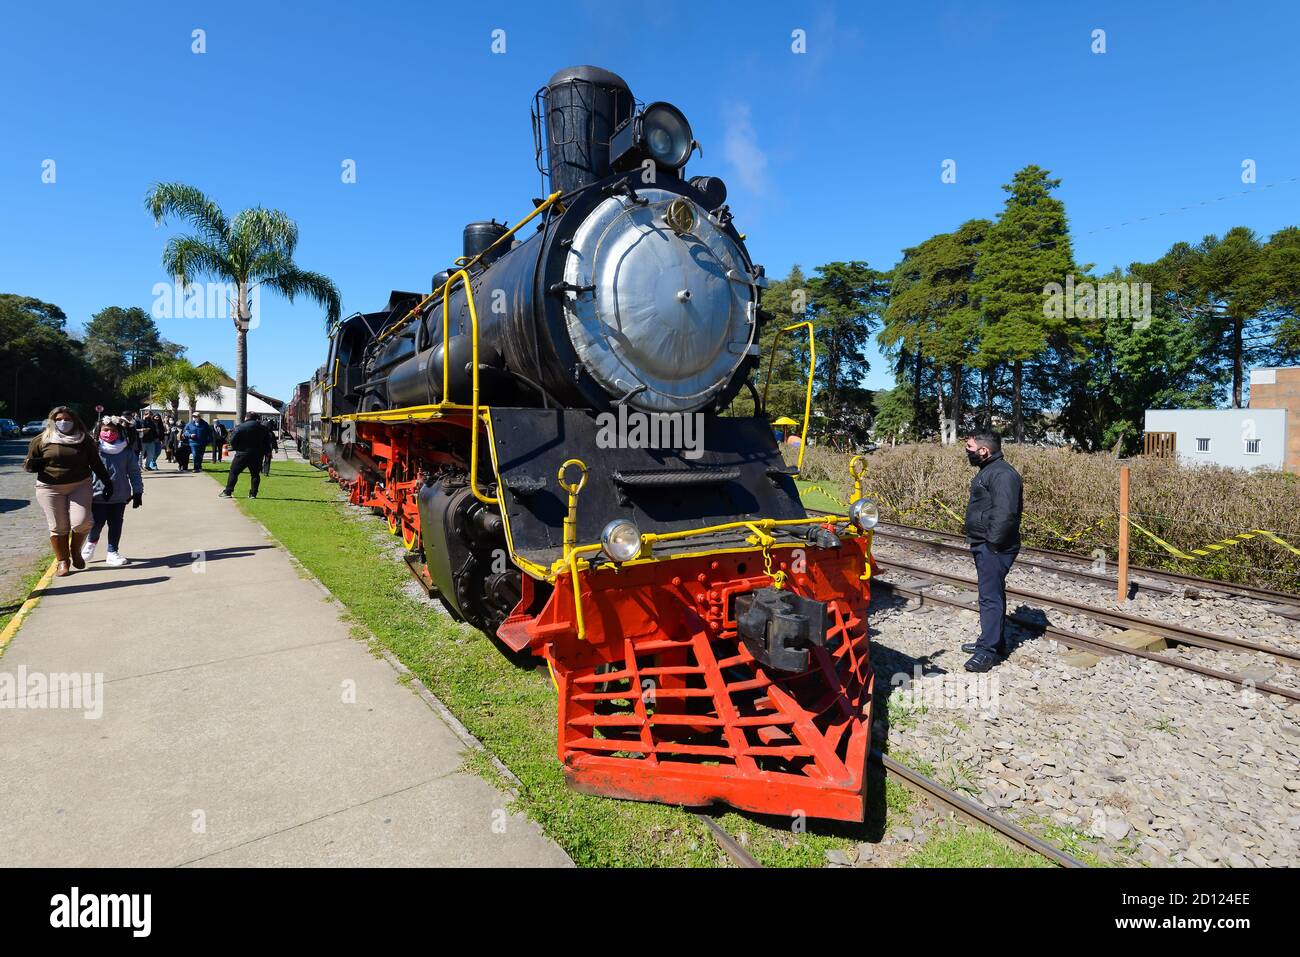 Locomotora de vapor conocida como Maria Fumaça, utilizada por los turistas en Garibaldi, Serra Gaucha, Rio Grande do Sul, Brasil. Tren ALCO Mikado. Foto de stock